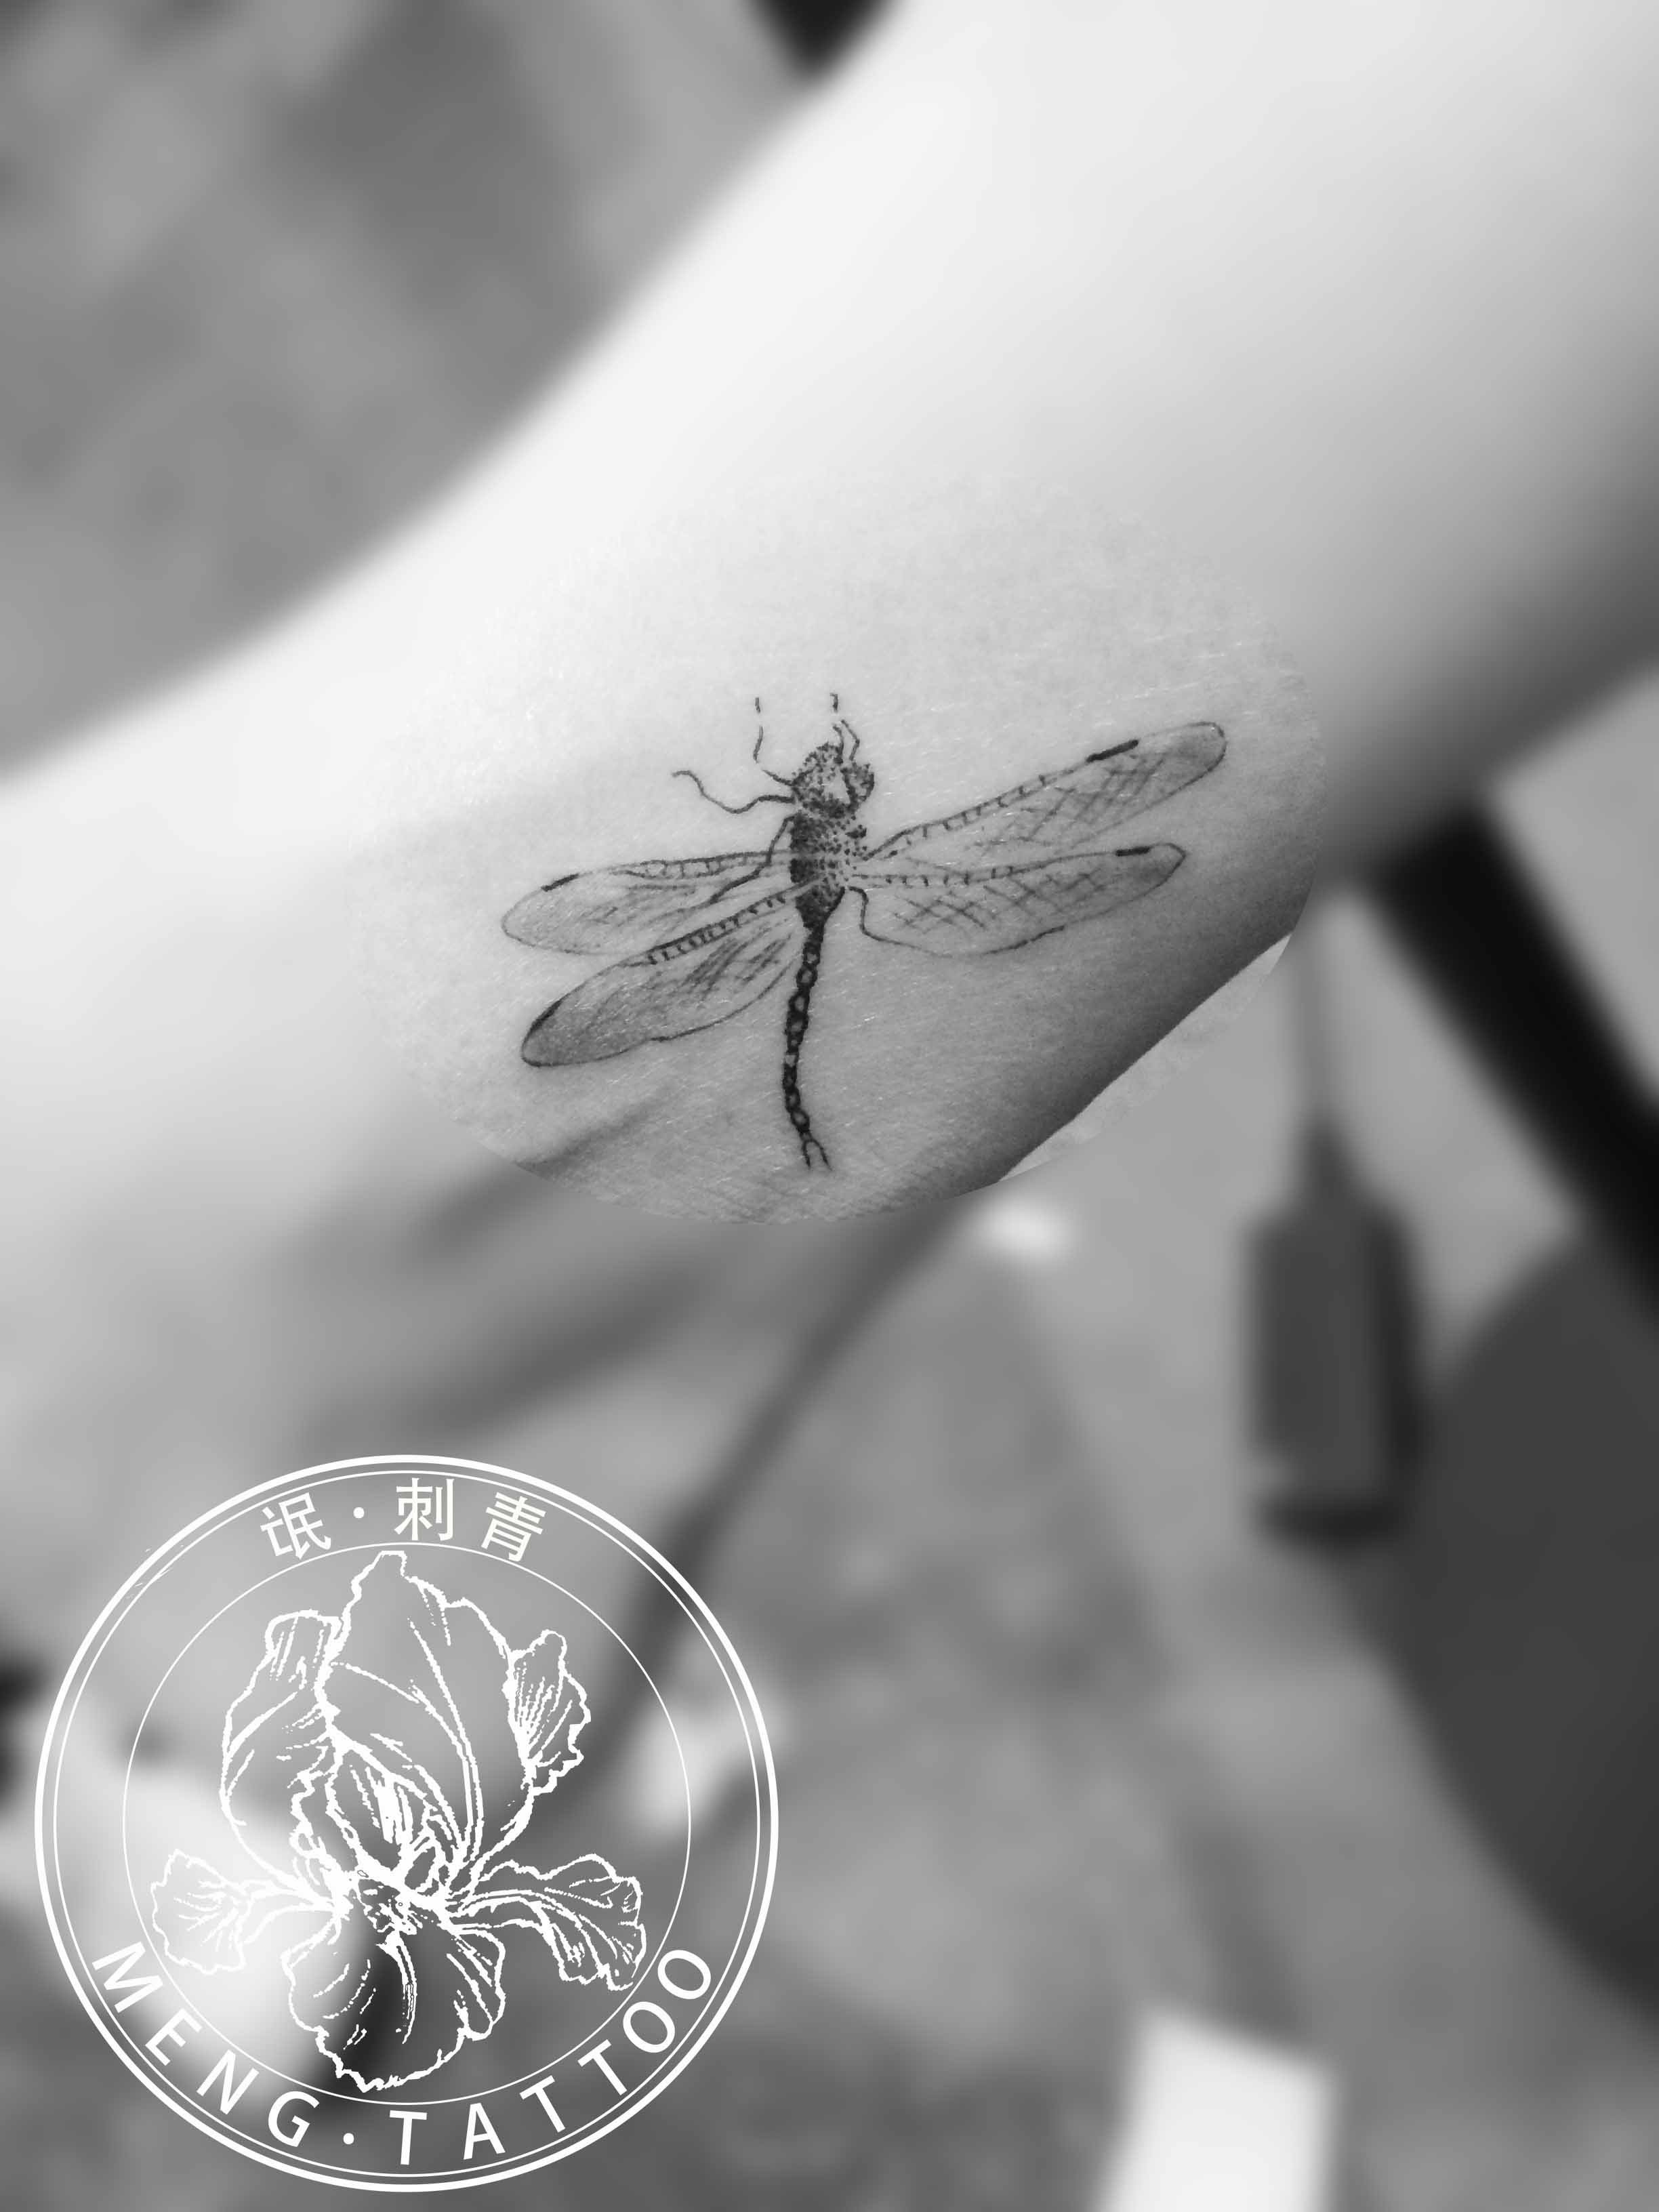 纹身-脚踝蜻蜓纹身图案